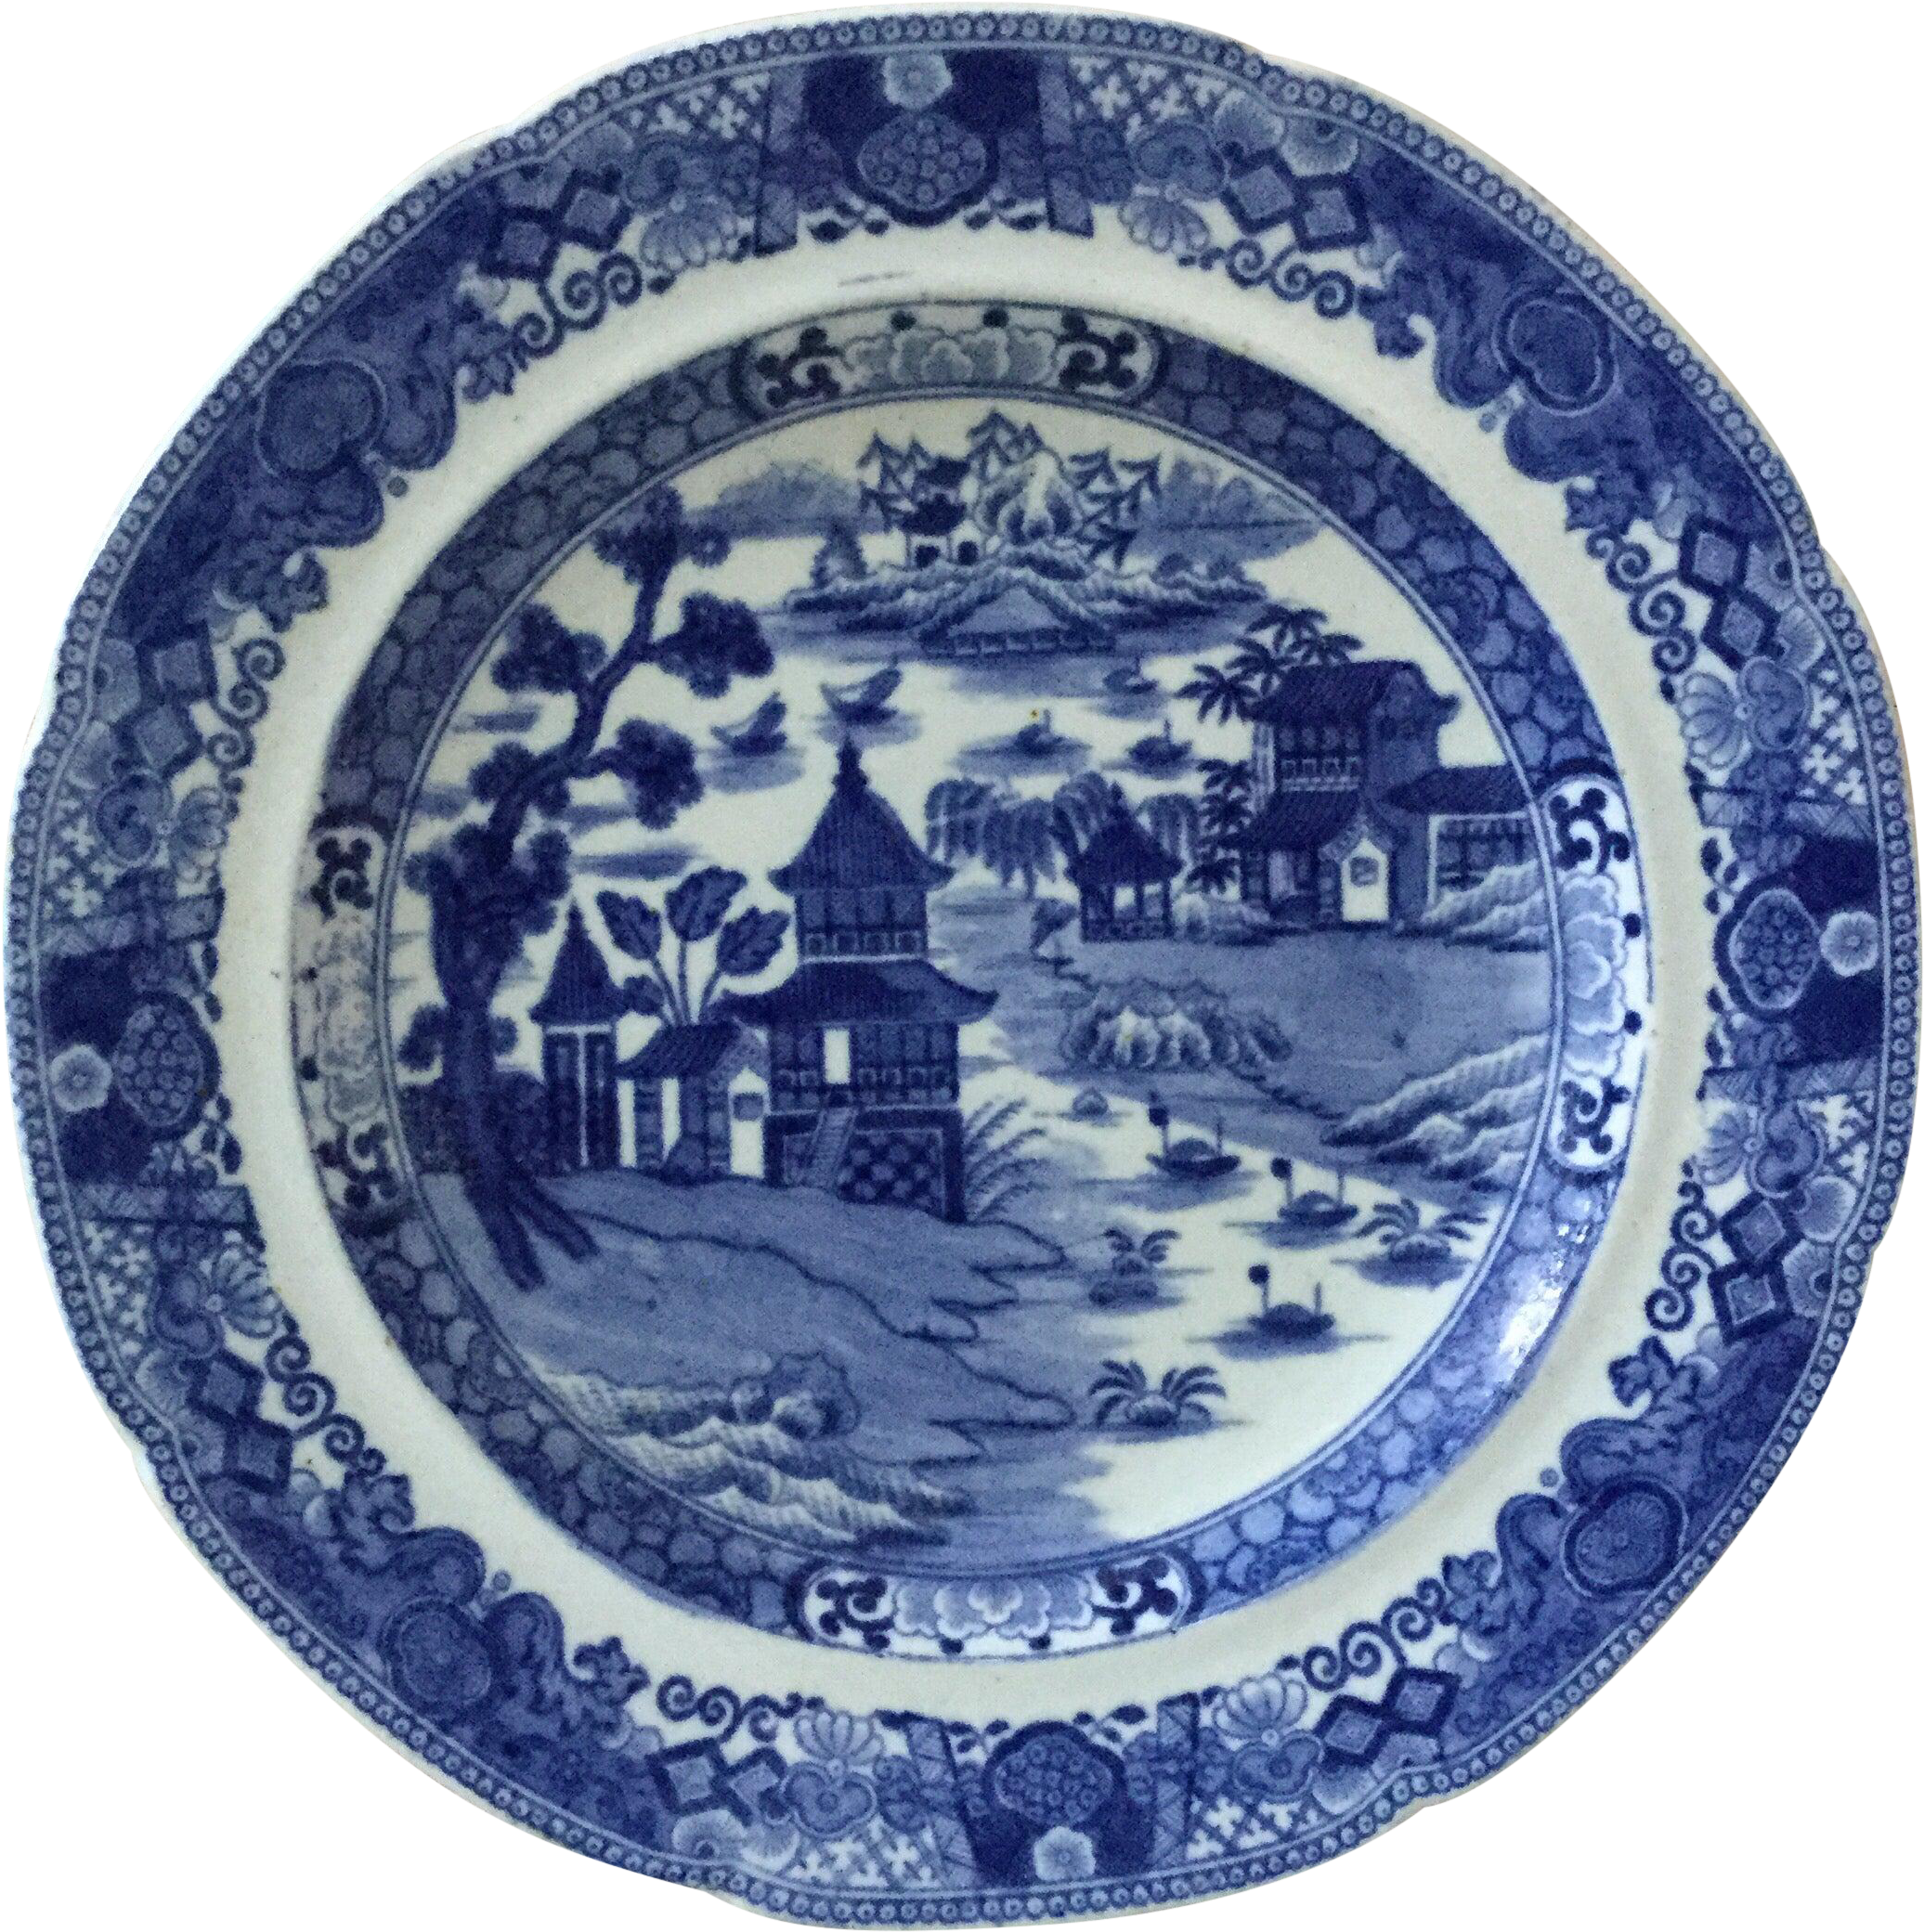 Porcelana azul e branca de estilo chinês britânico do século 19, porcelana azul e branca